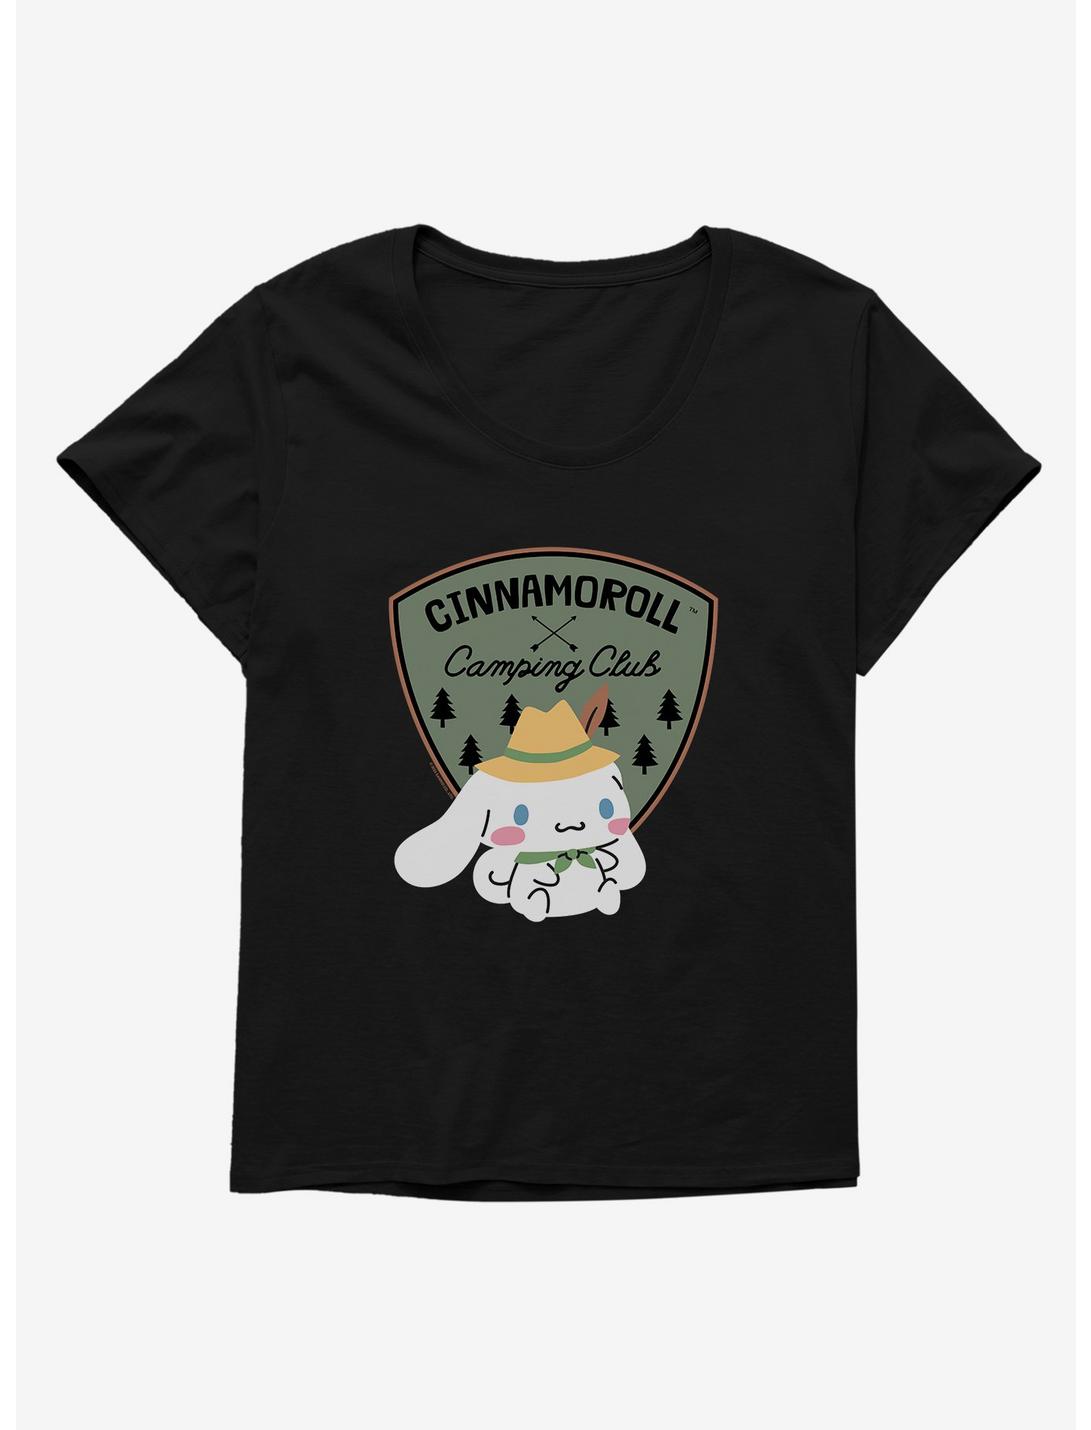 Cinnamoroll Camping Club Womens T-Shirt Plus Size, BLACK, hi-res